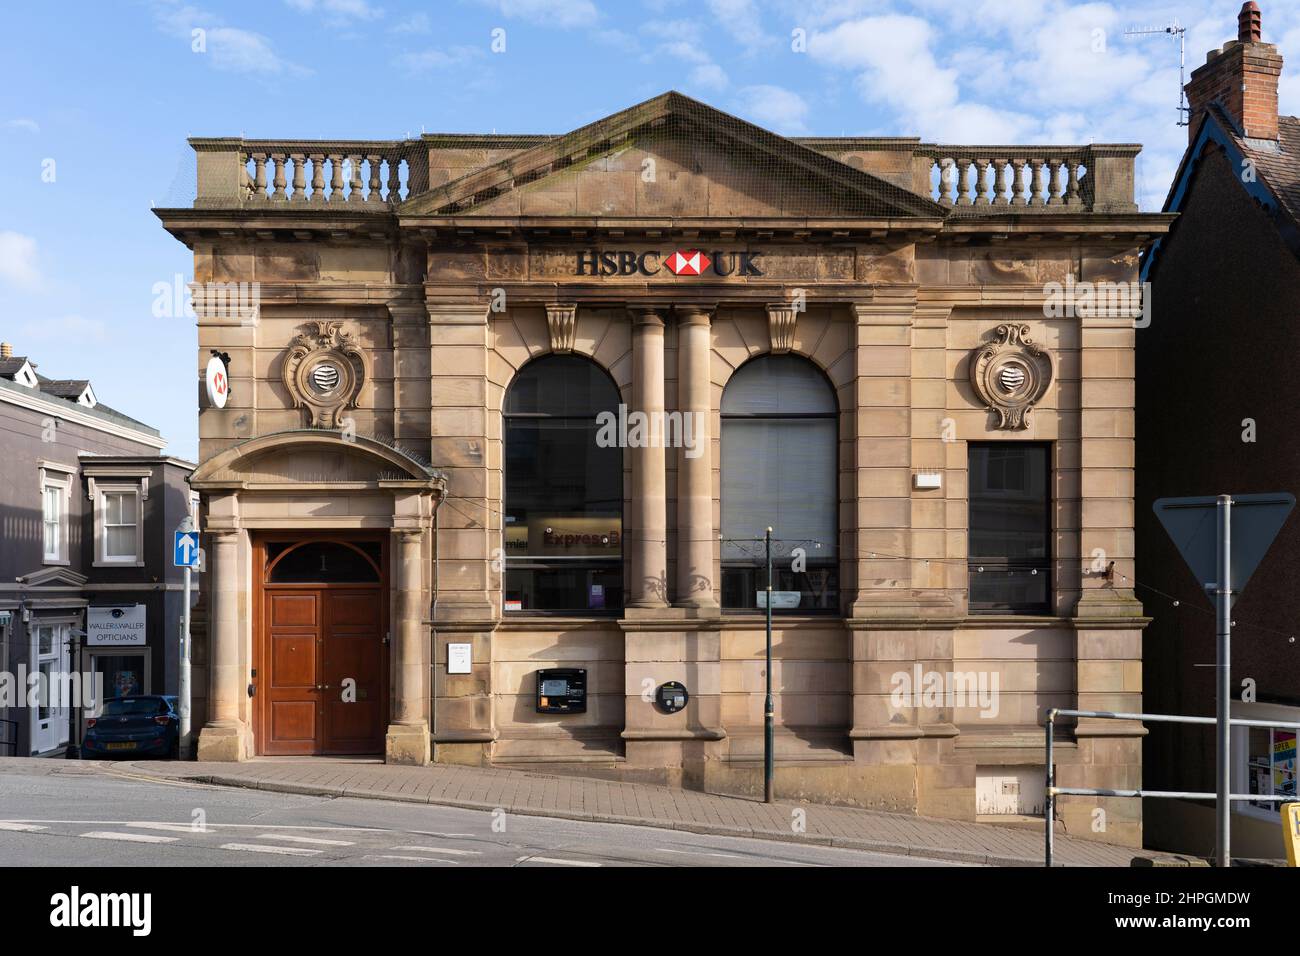 Edificio catalogado de grado II con fachada de piedra vestida de una sucursal de HSBC en 1 Church Street en Great Malvern, Worcestershire, Inglaterra Foto de stock